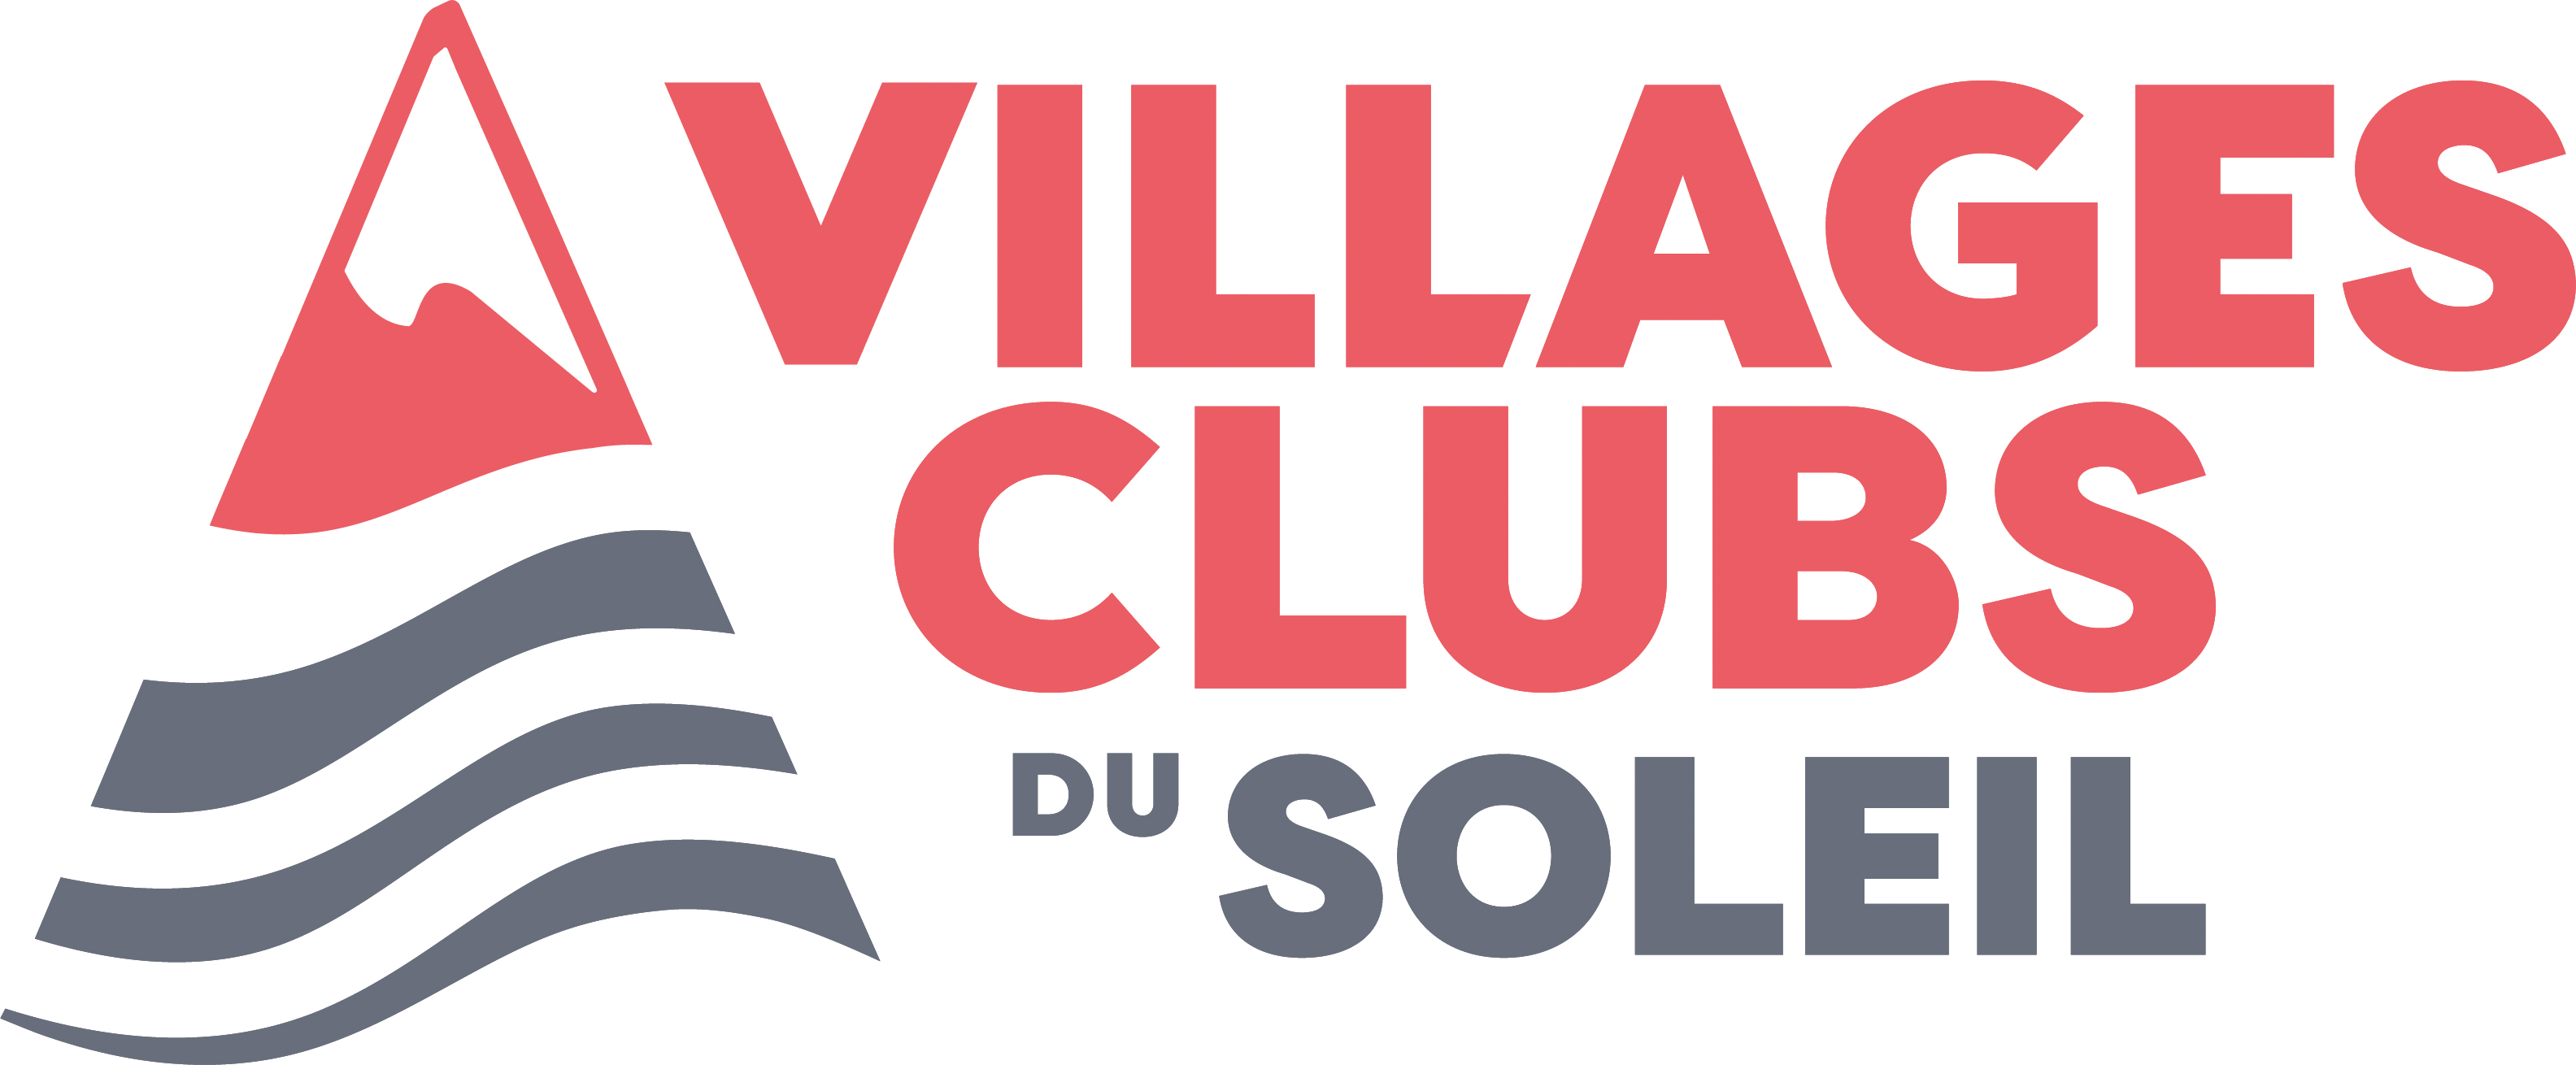 VILLAGES CLUBS DU SOLEIL - Villages vacances, Résidences - France